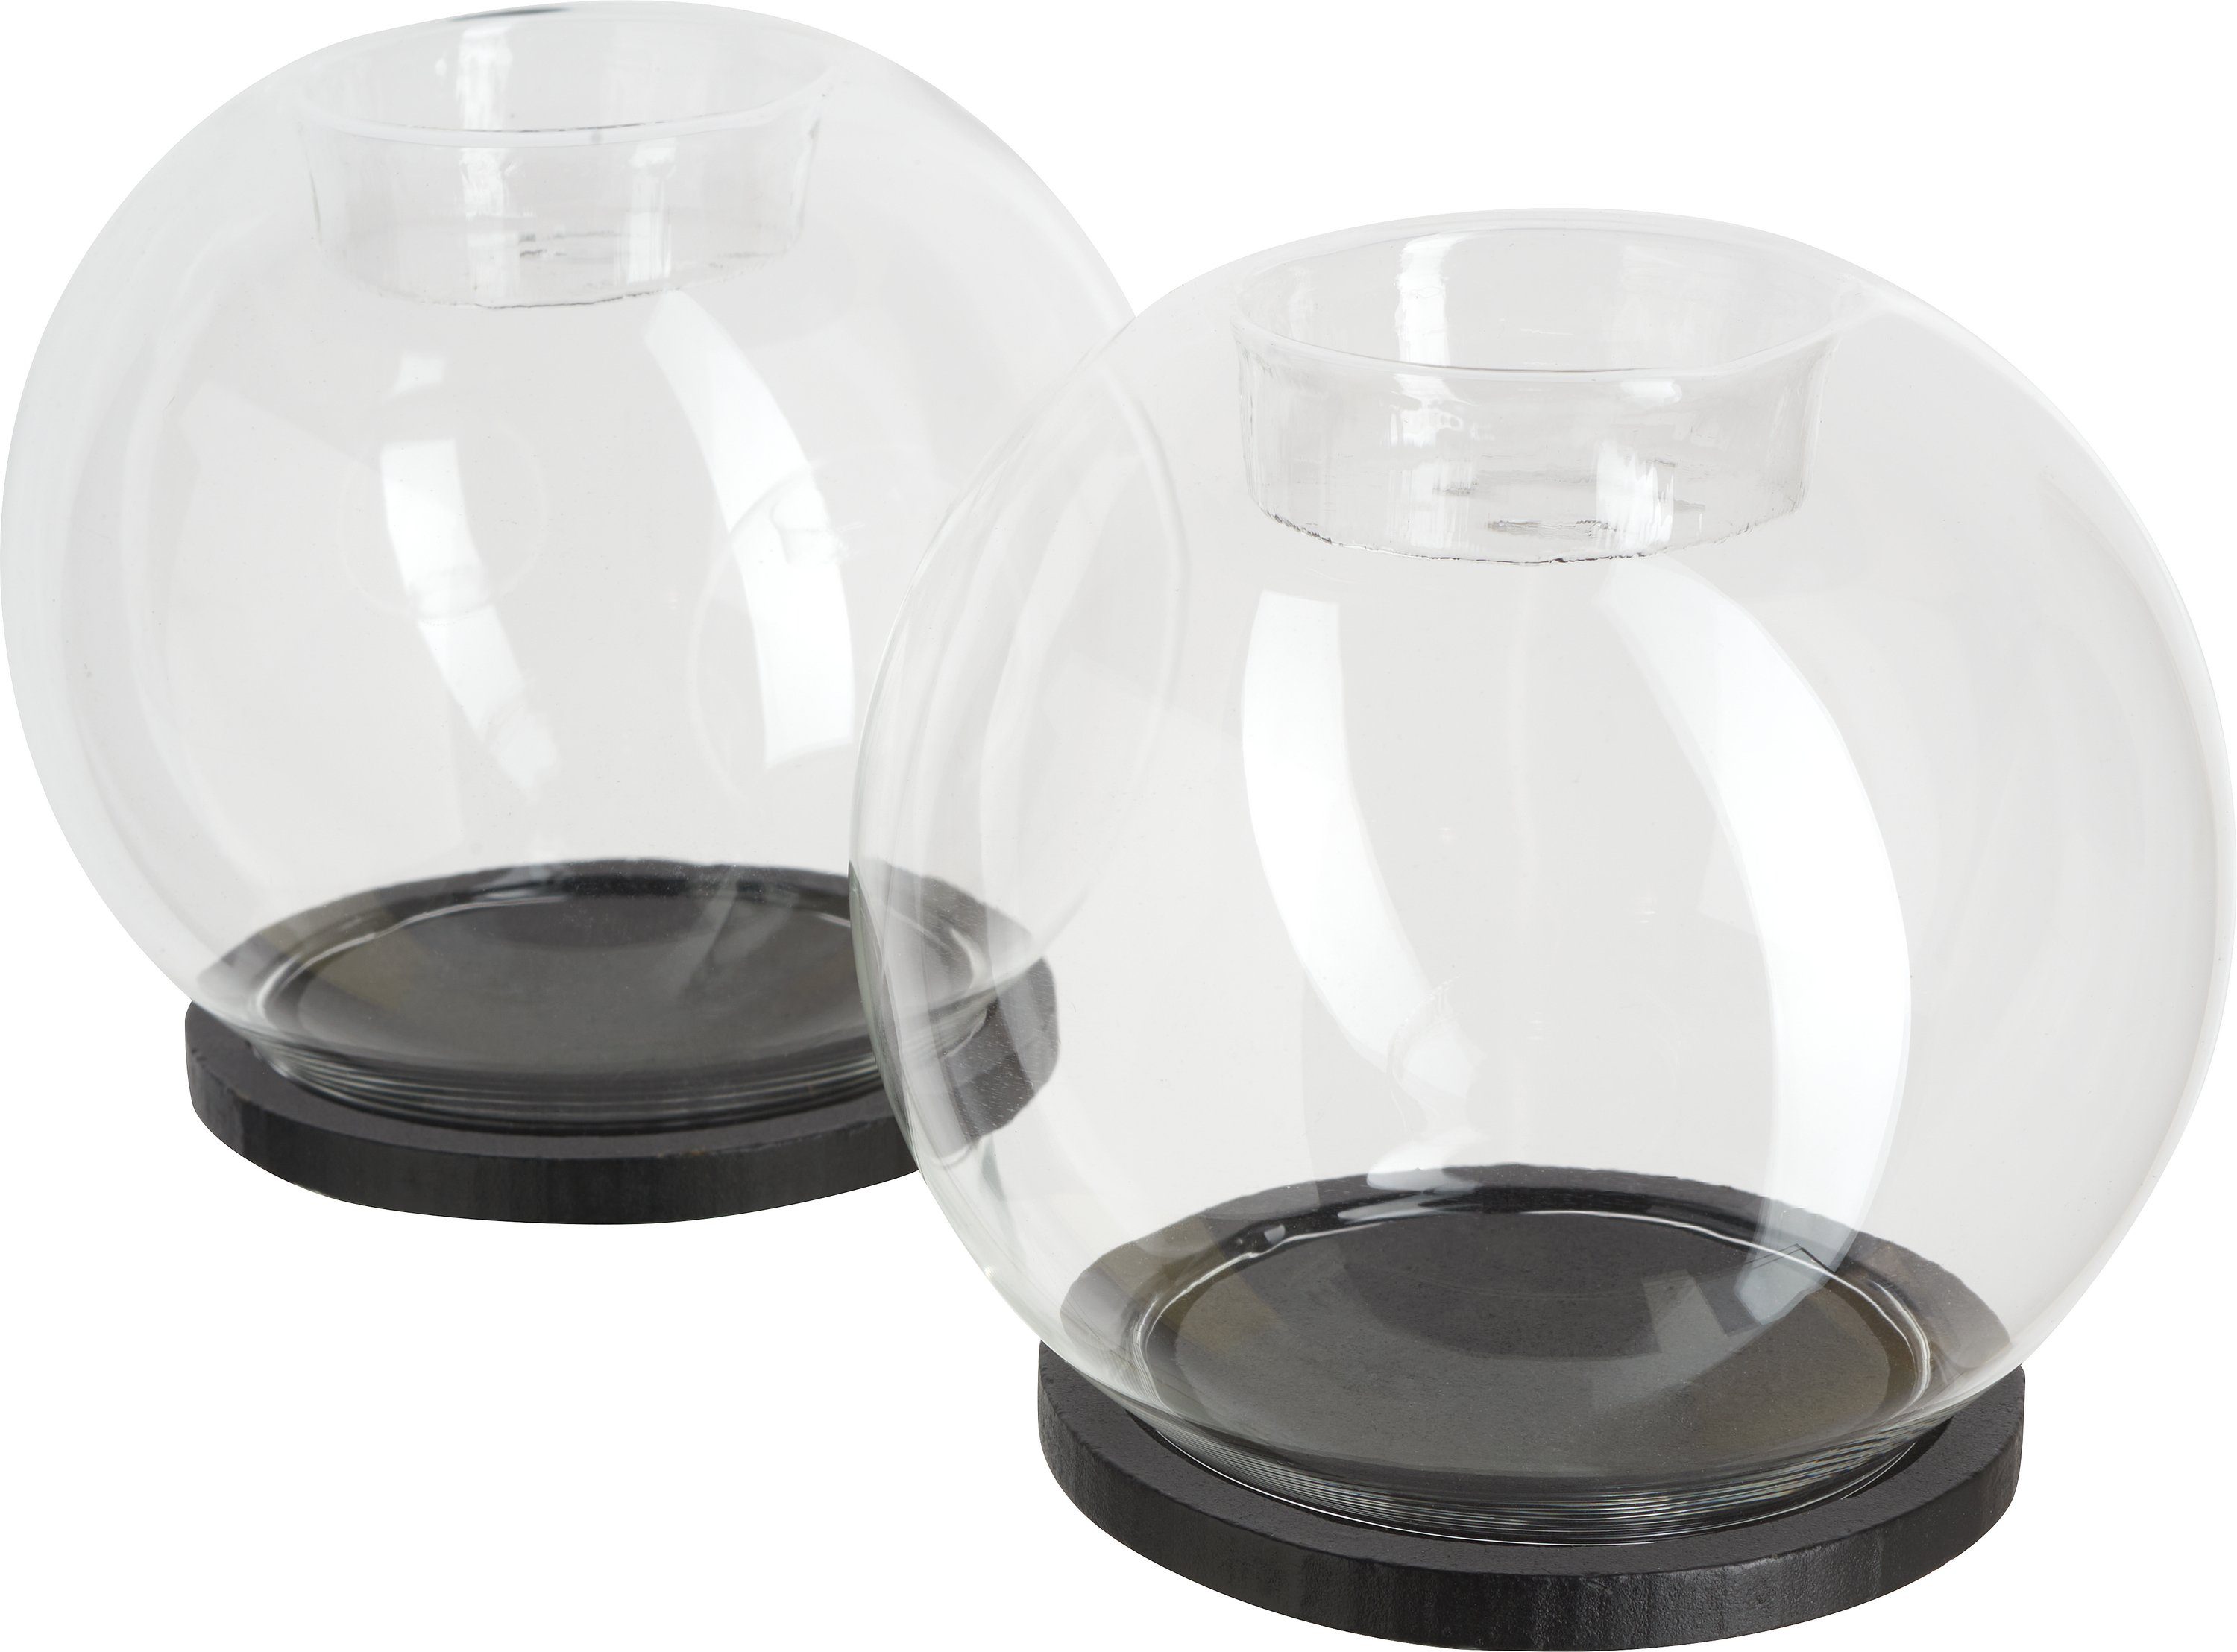 VBS Teelichthalter Glaskugel, Ø10 cm 2er-Pack | Vorratsgläser